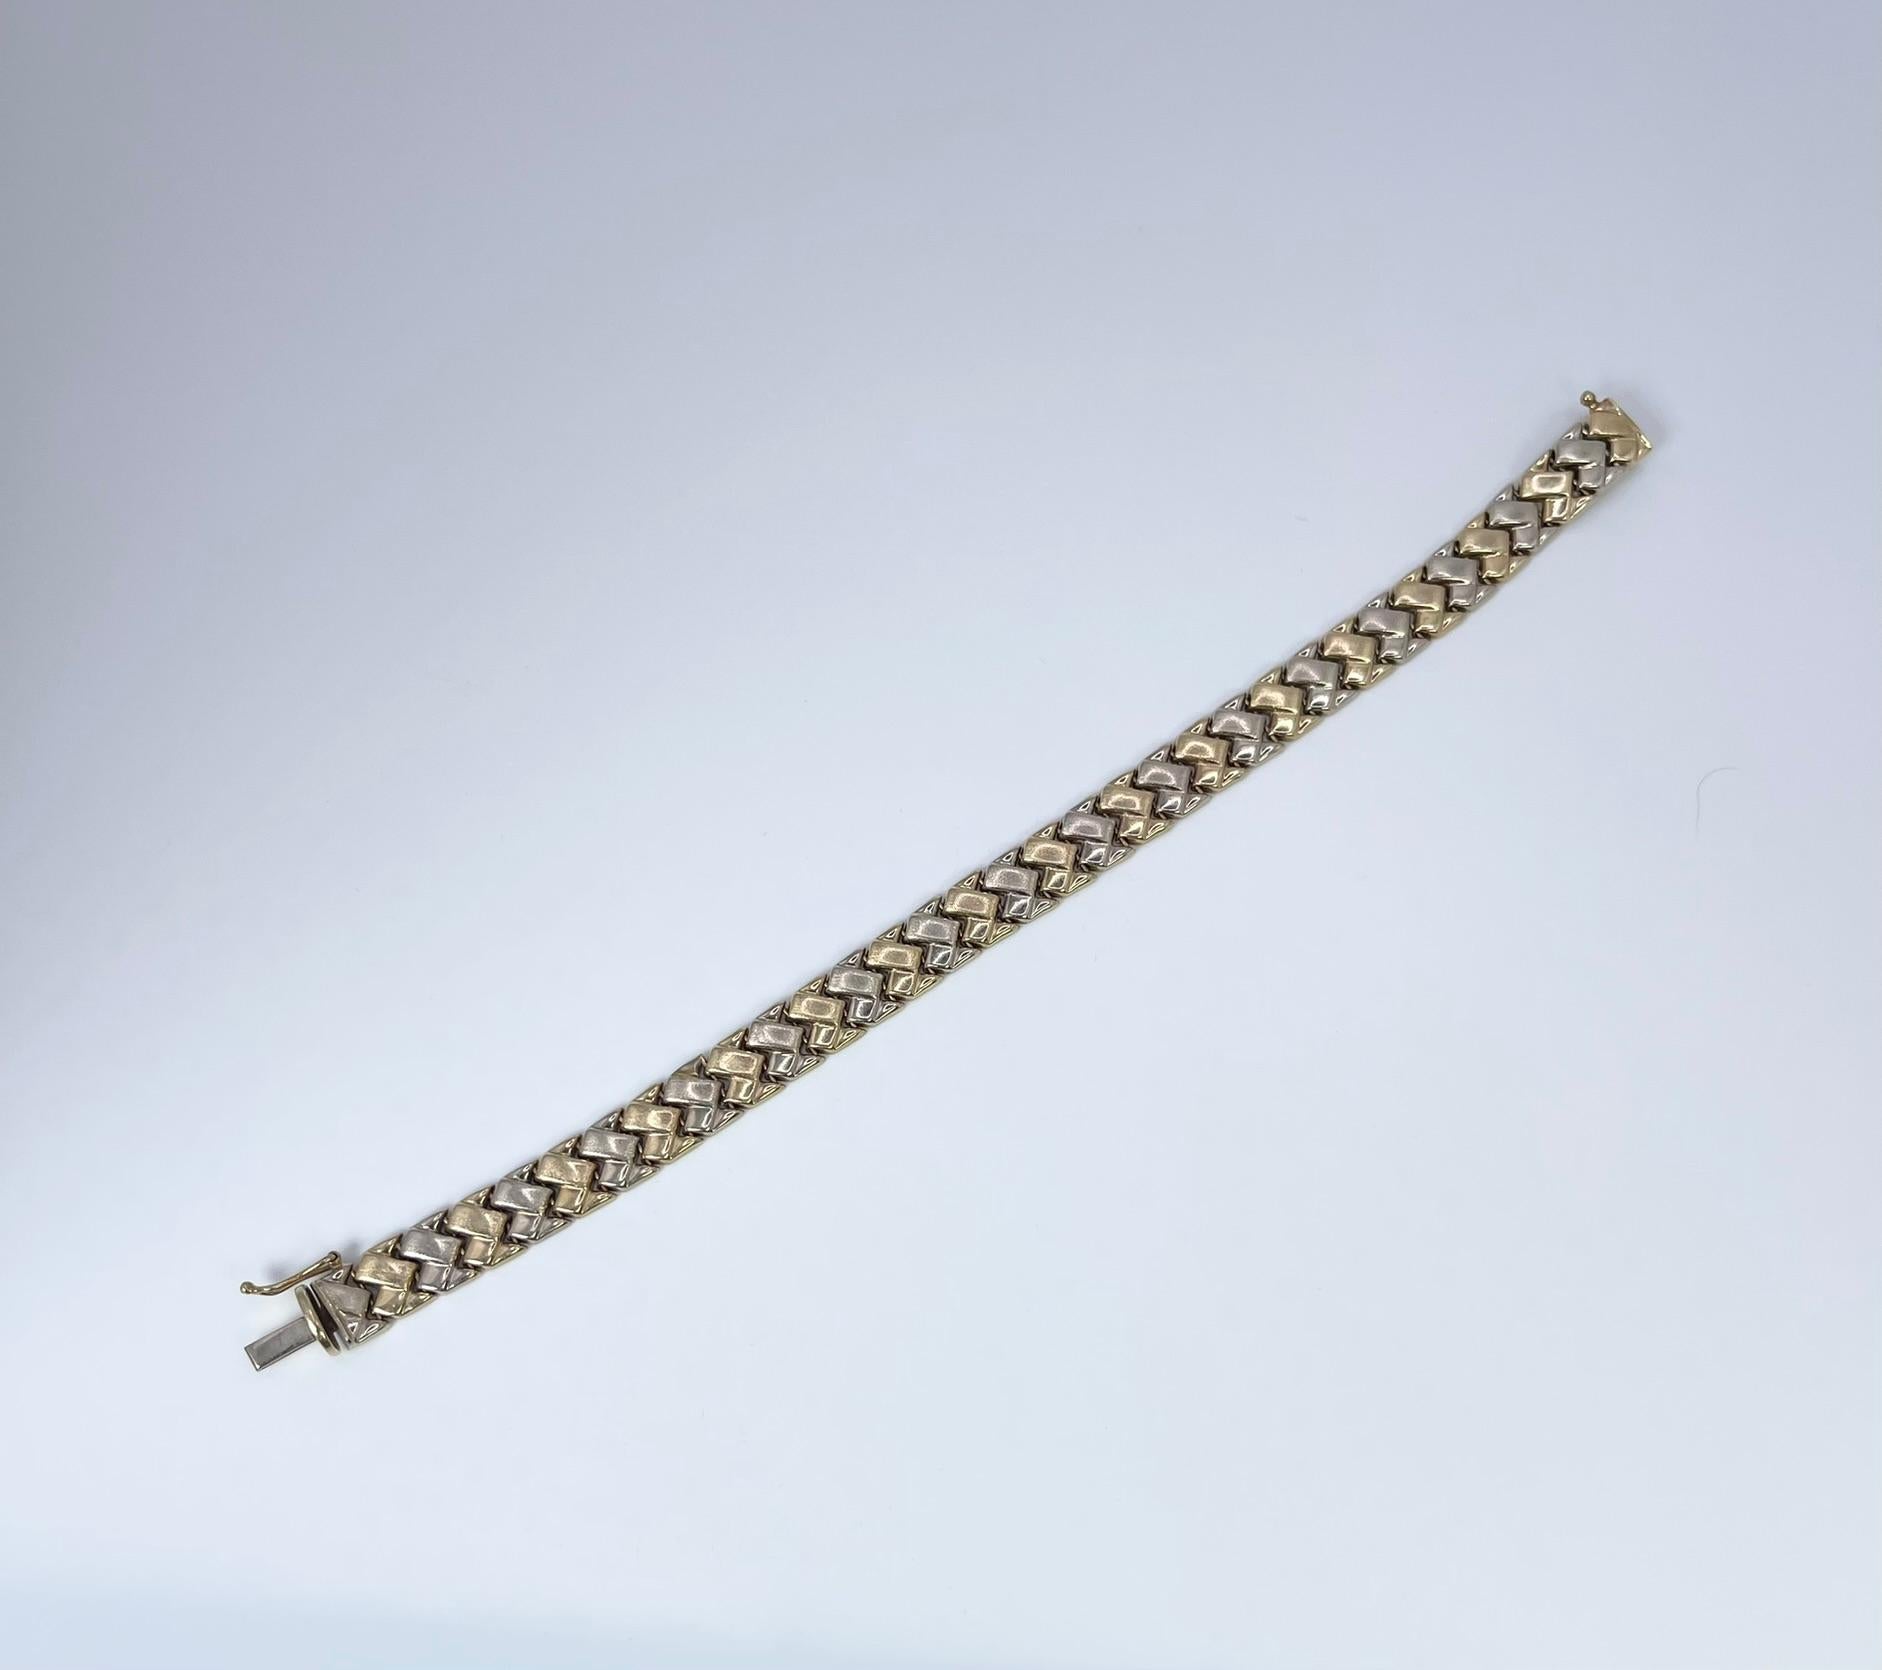 Bracelet de 8,6 mm de large fabriqué avec des couleurs dorées à deux tons dans un design géométrique, le bracelet est unisexe.


POIDS EN GRAMME : 12.52gr
OR : or jaune et blanc 14KT
FERMETURE : Personnalisée (sécurisée)
LARGEUR : 8.6mm 
Creux :